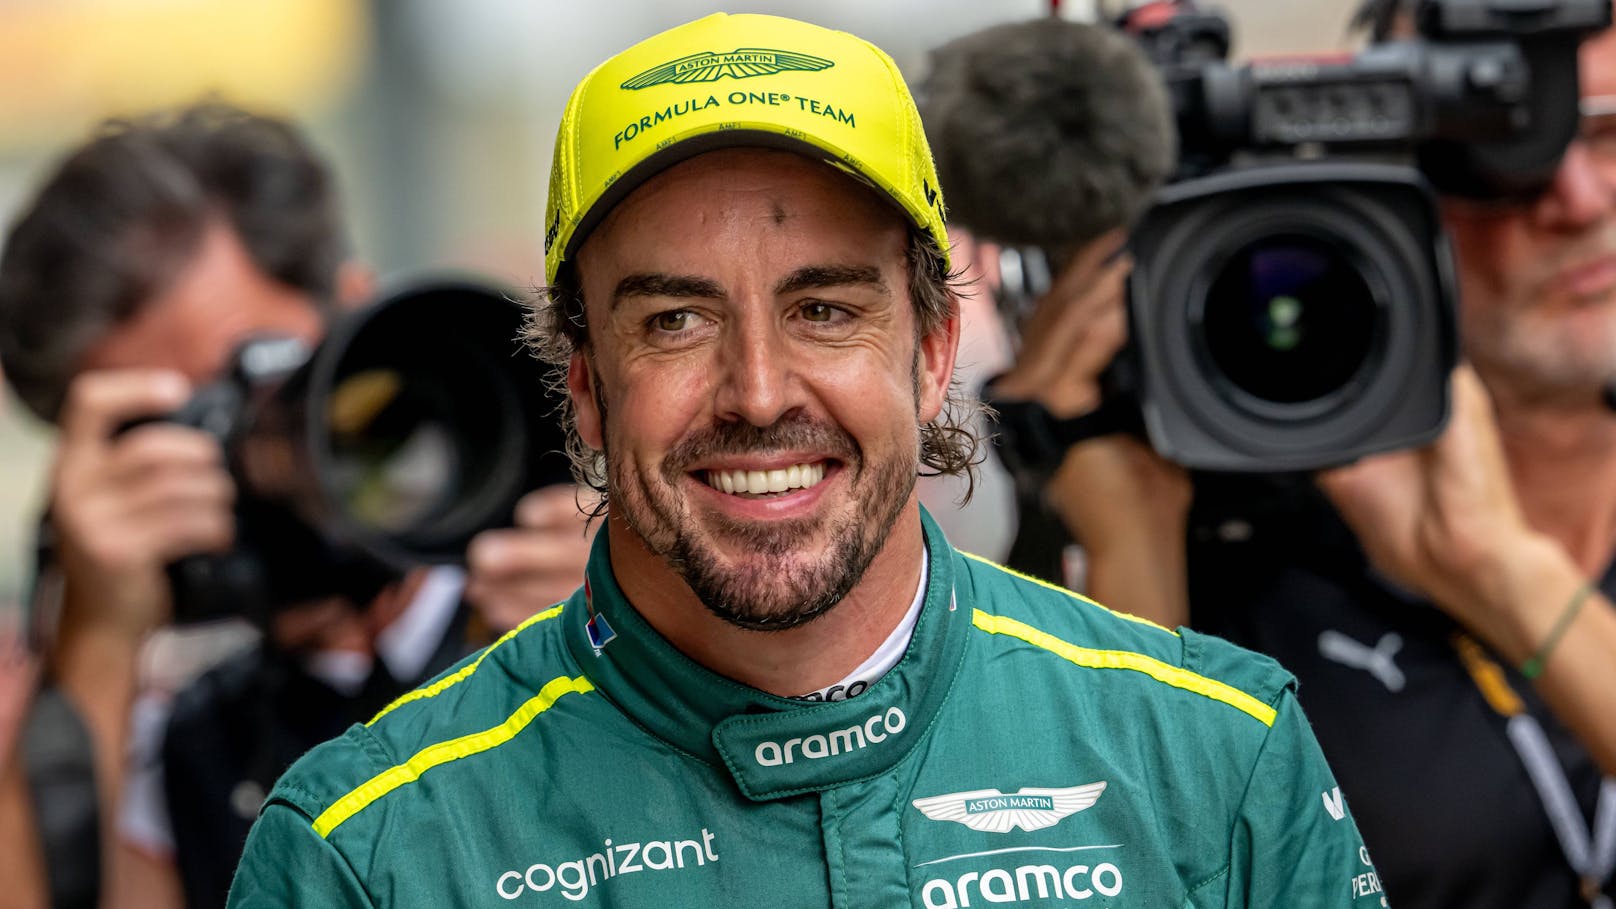 Fans spekulieren, dass es in dem Song "Imgonnagetyouback" um den Formel-1-Star Fernando Alonso geht.